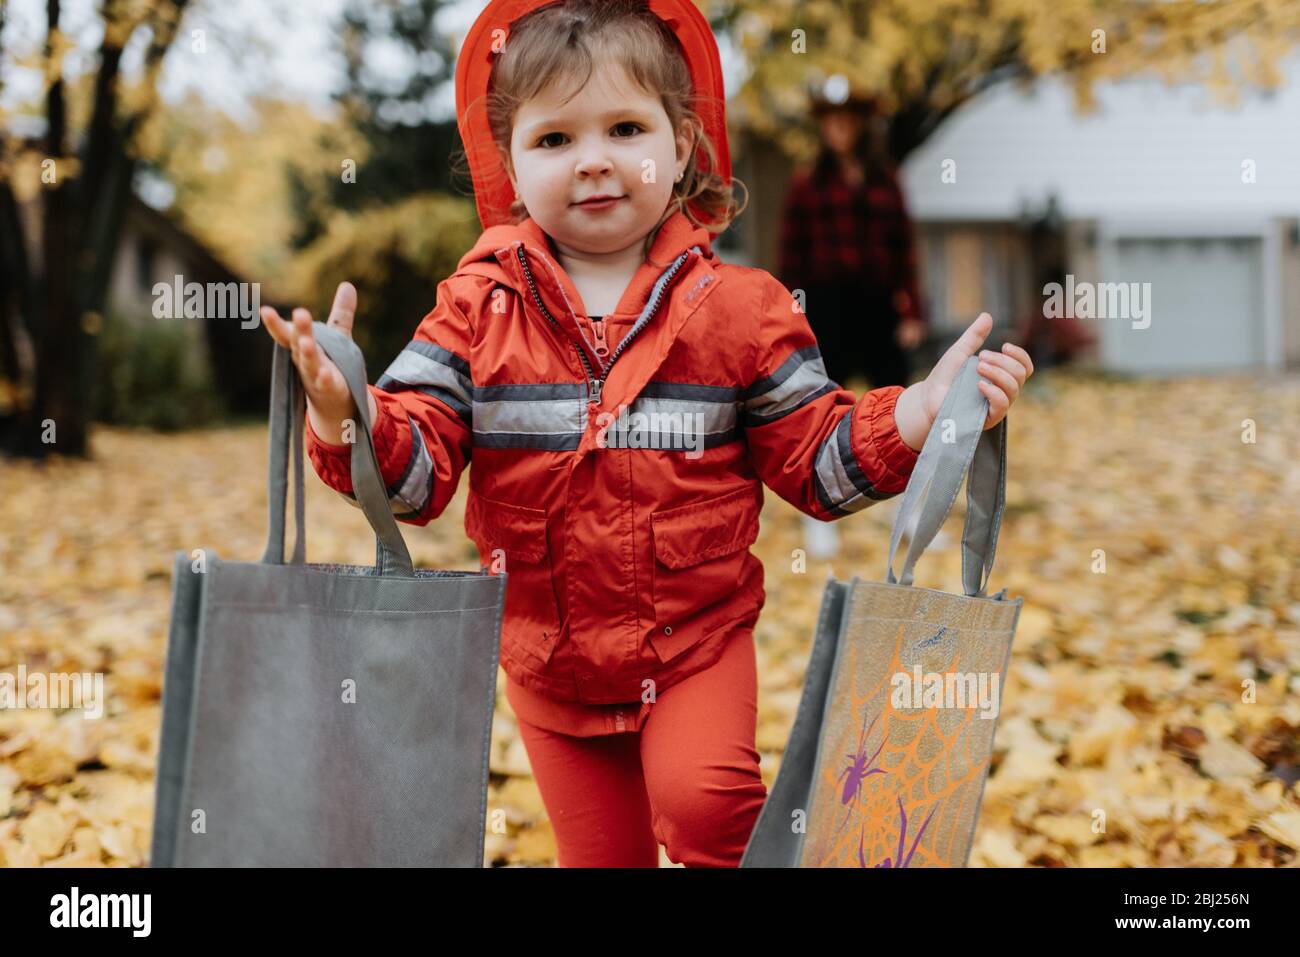 Ein Kind, das als Feuerwehrmann für Halloween gekleidet ist, geht durch einen Park mit Blättern auf dem Boden. Stockfoto